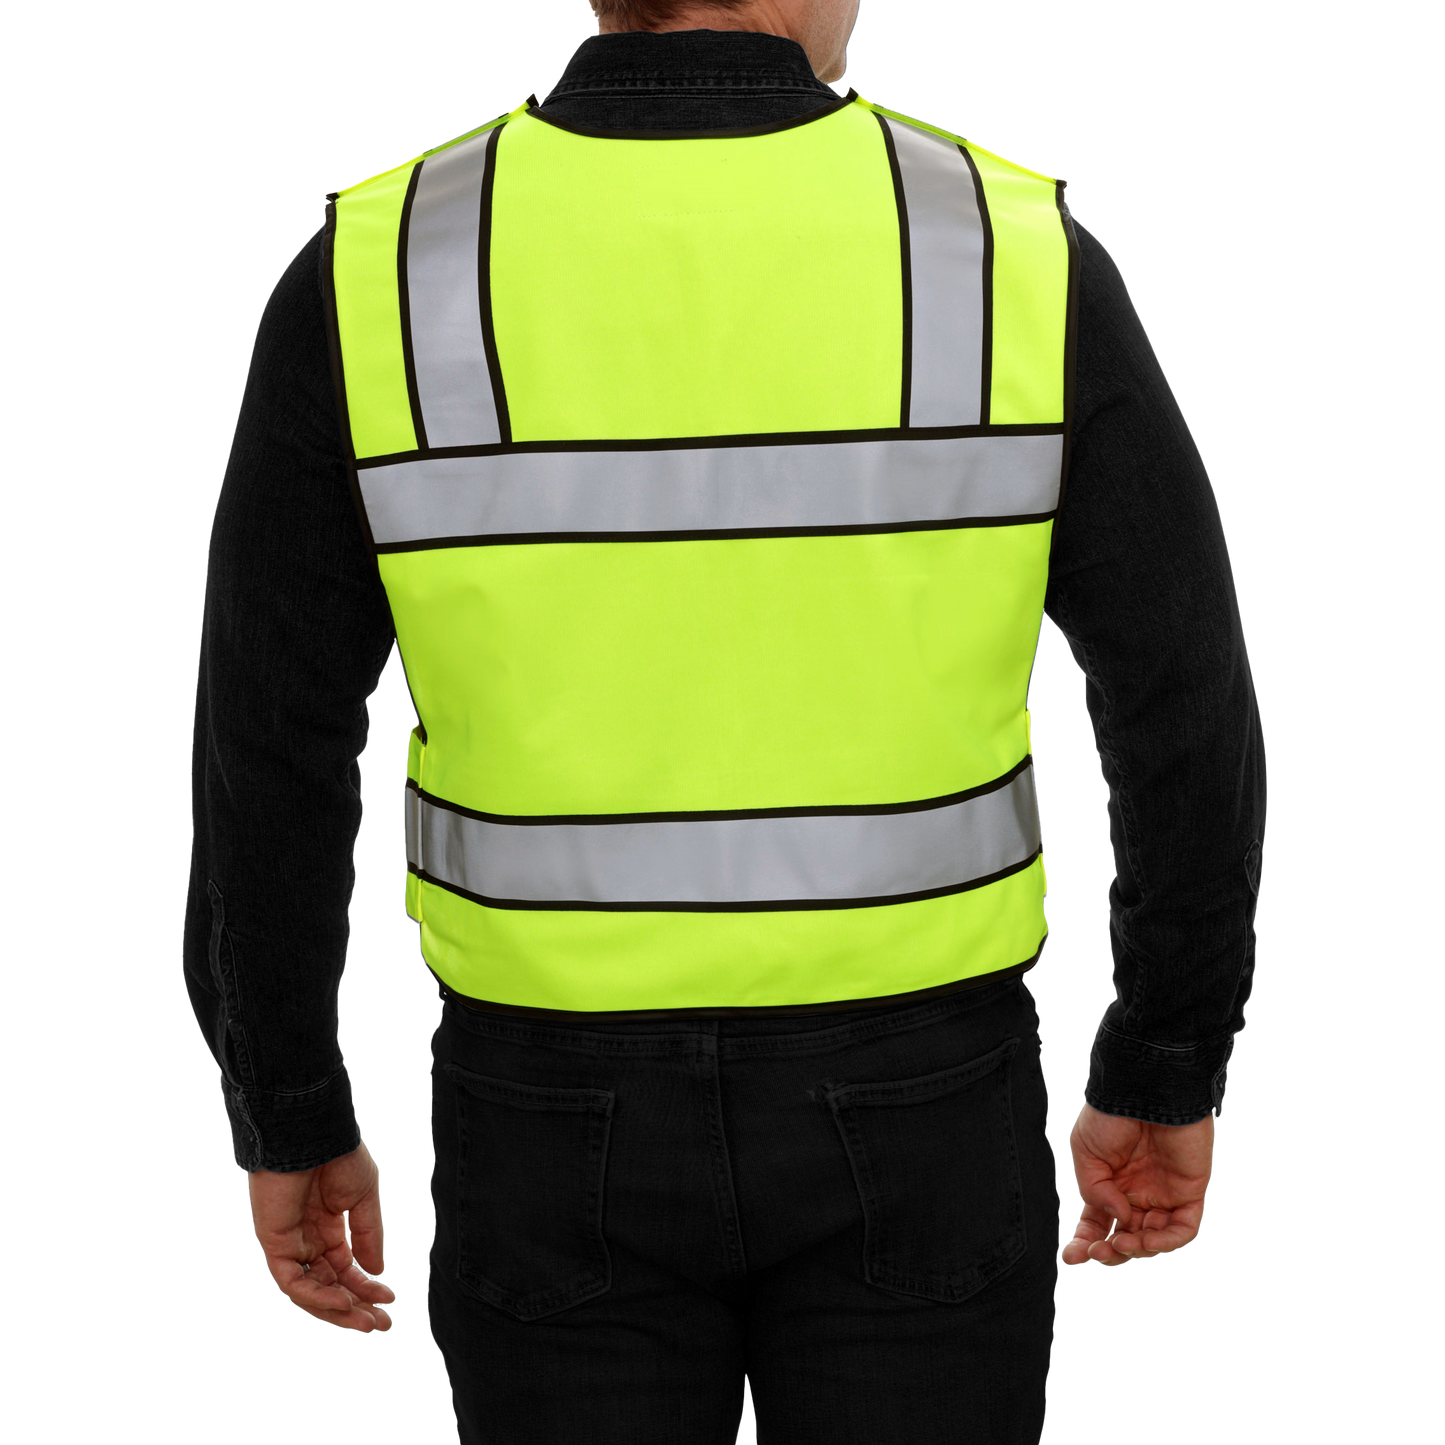 Breakaway Public Safety Vest